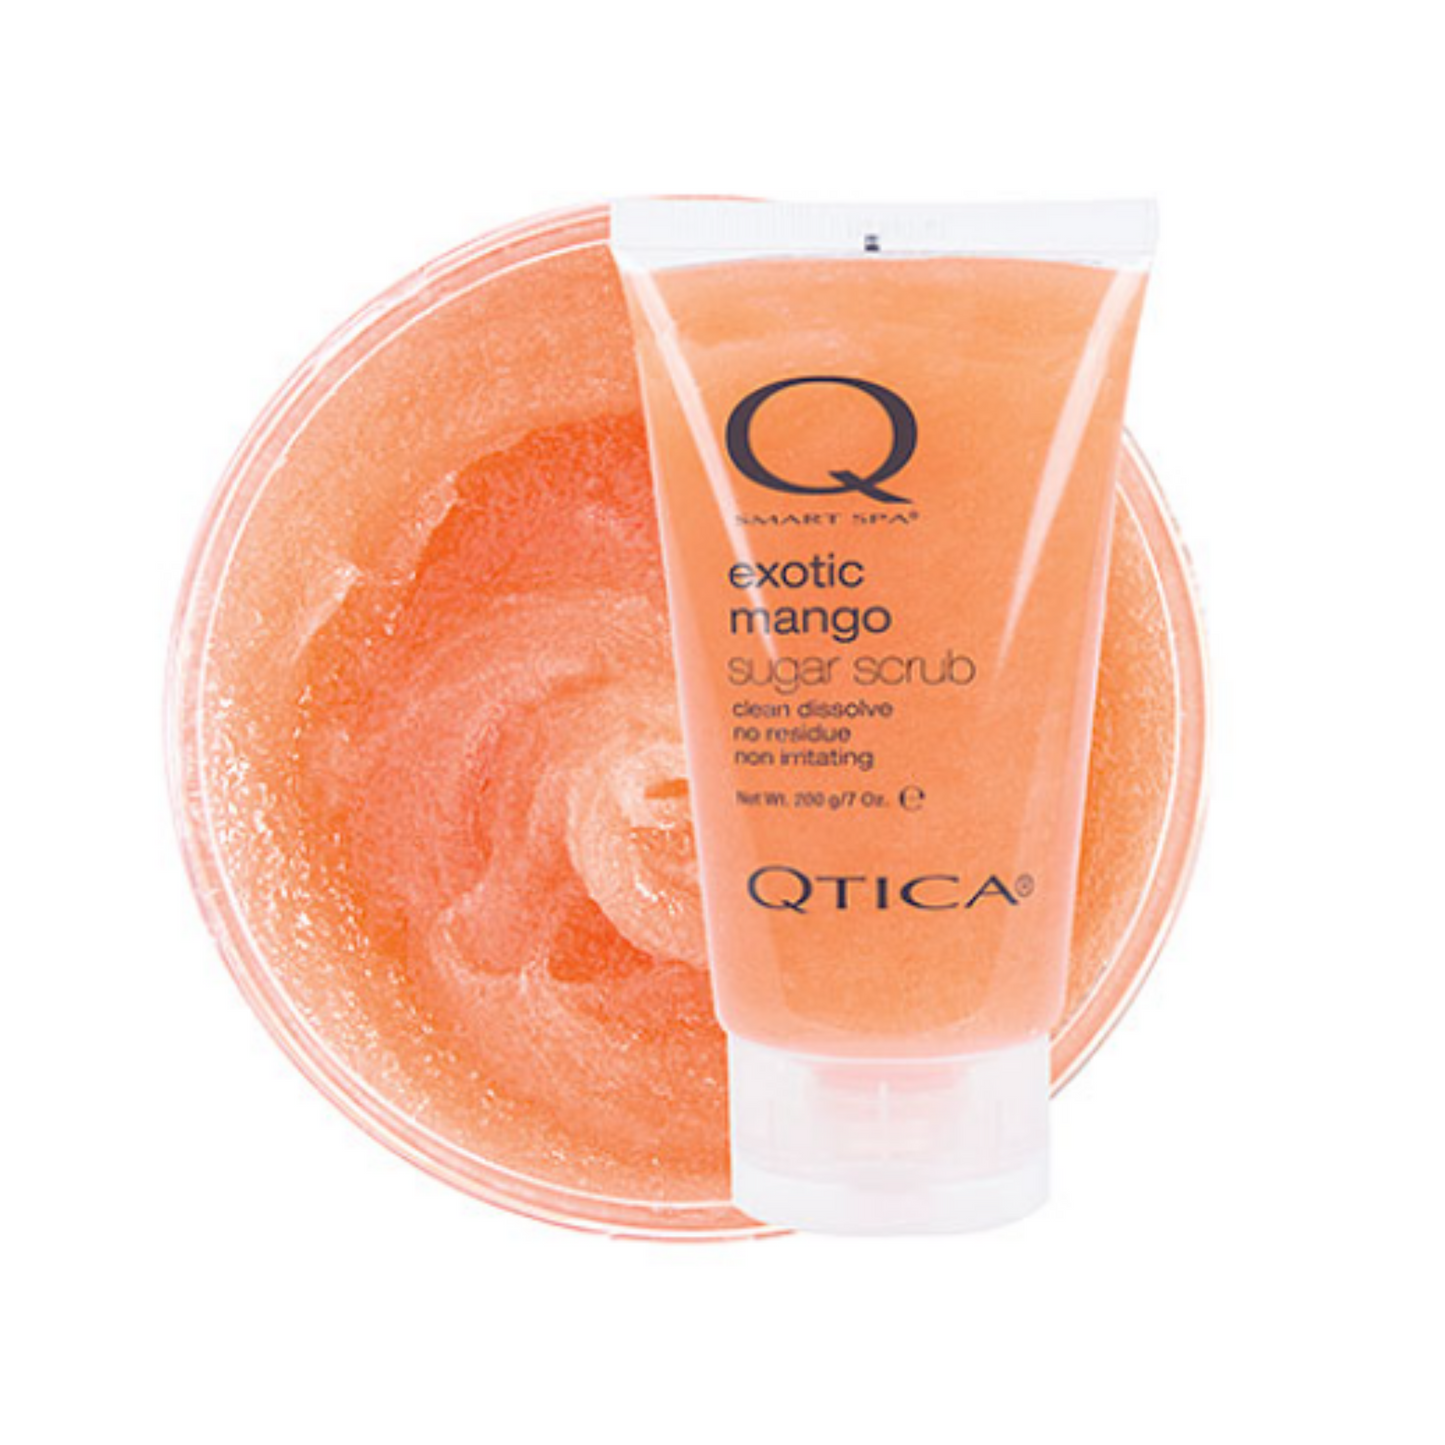 Qtica Smart Spa Exotic Mango Sugar Scrub